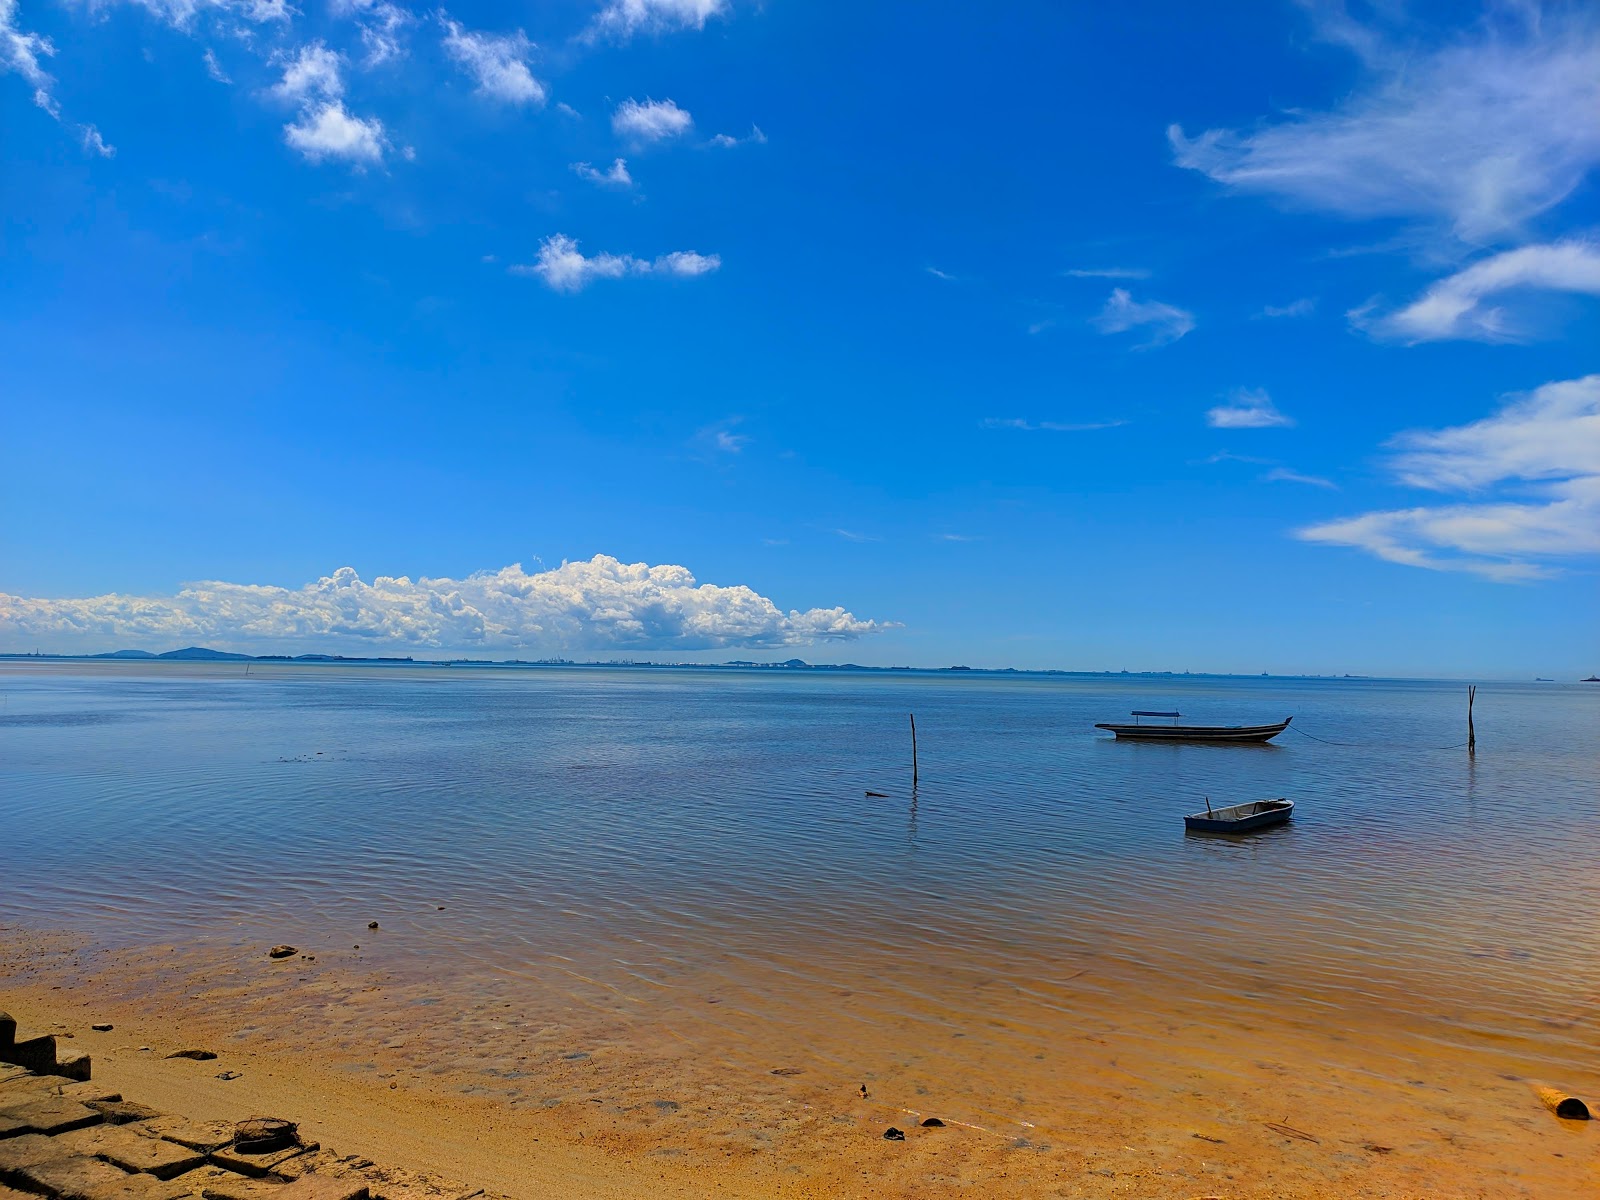 Zdjęcie Pantai Tj. Bemban z powierzchnią turkusowa woda